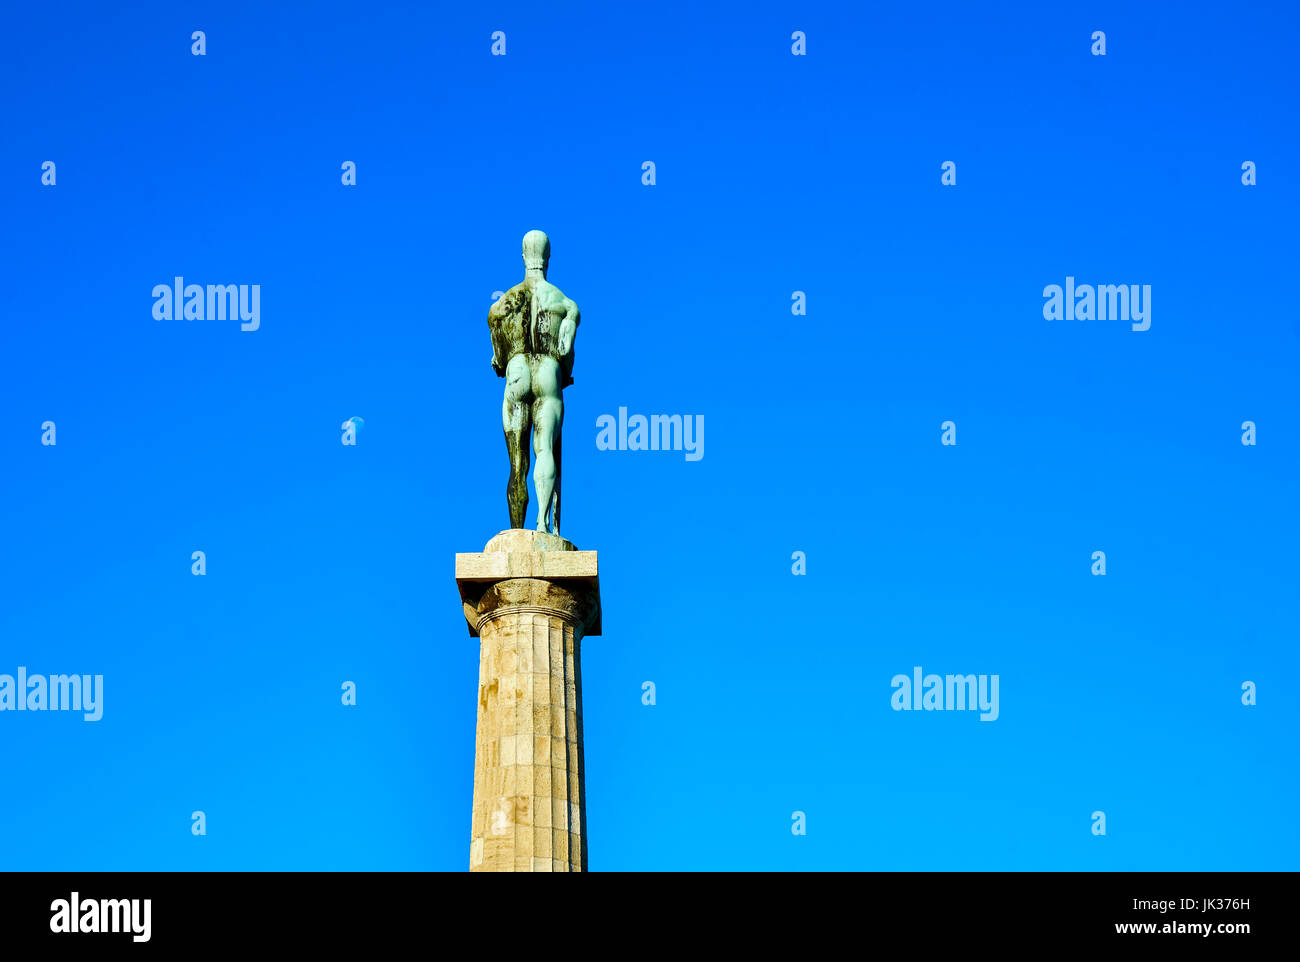 Belgrads Statue des Siegers Blick auf den Fluss Sava und die Stadt zur Festung von Belgrad, Belgrad, Serbien. Stockfoto